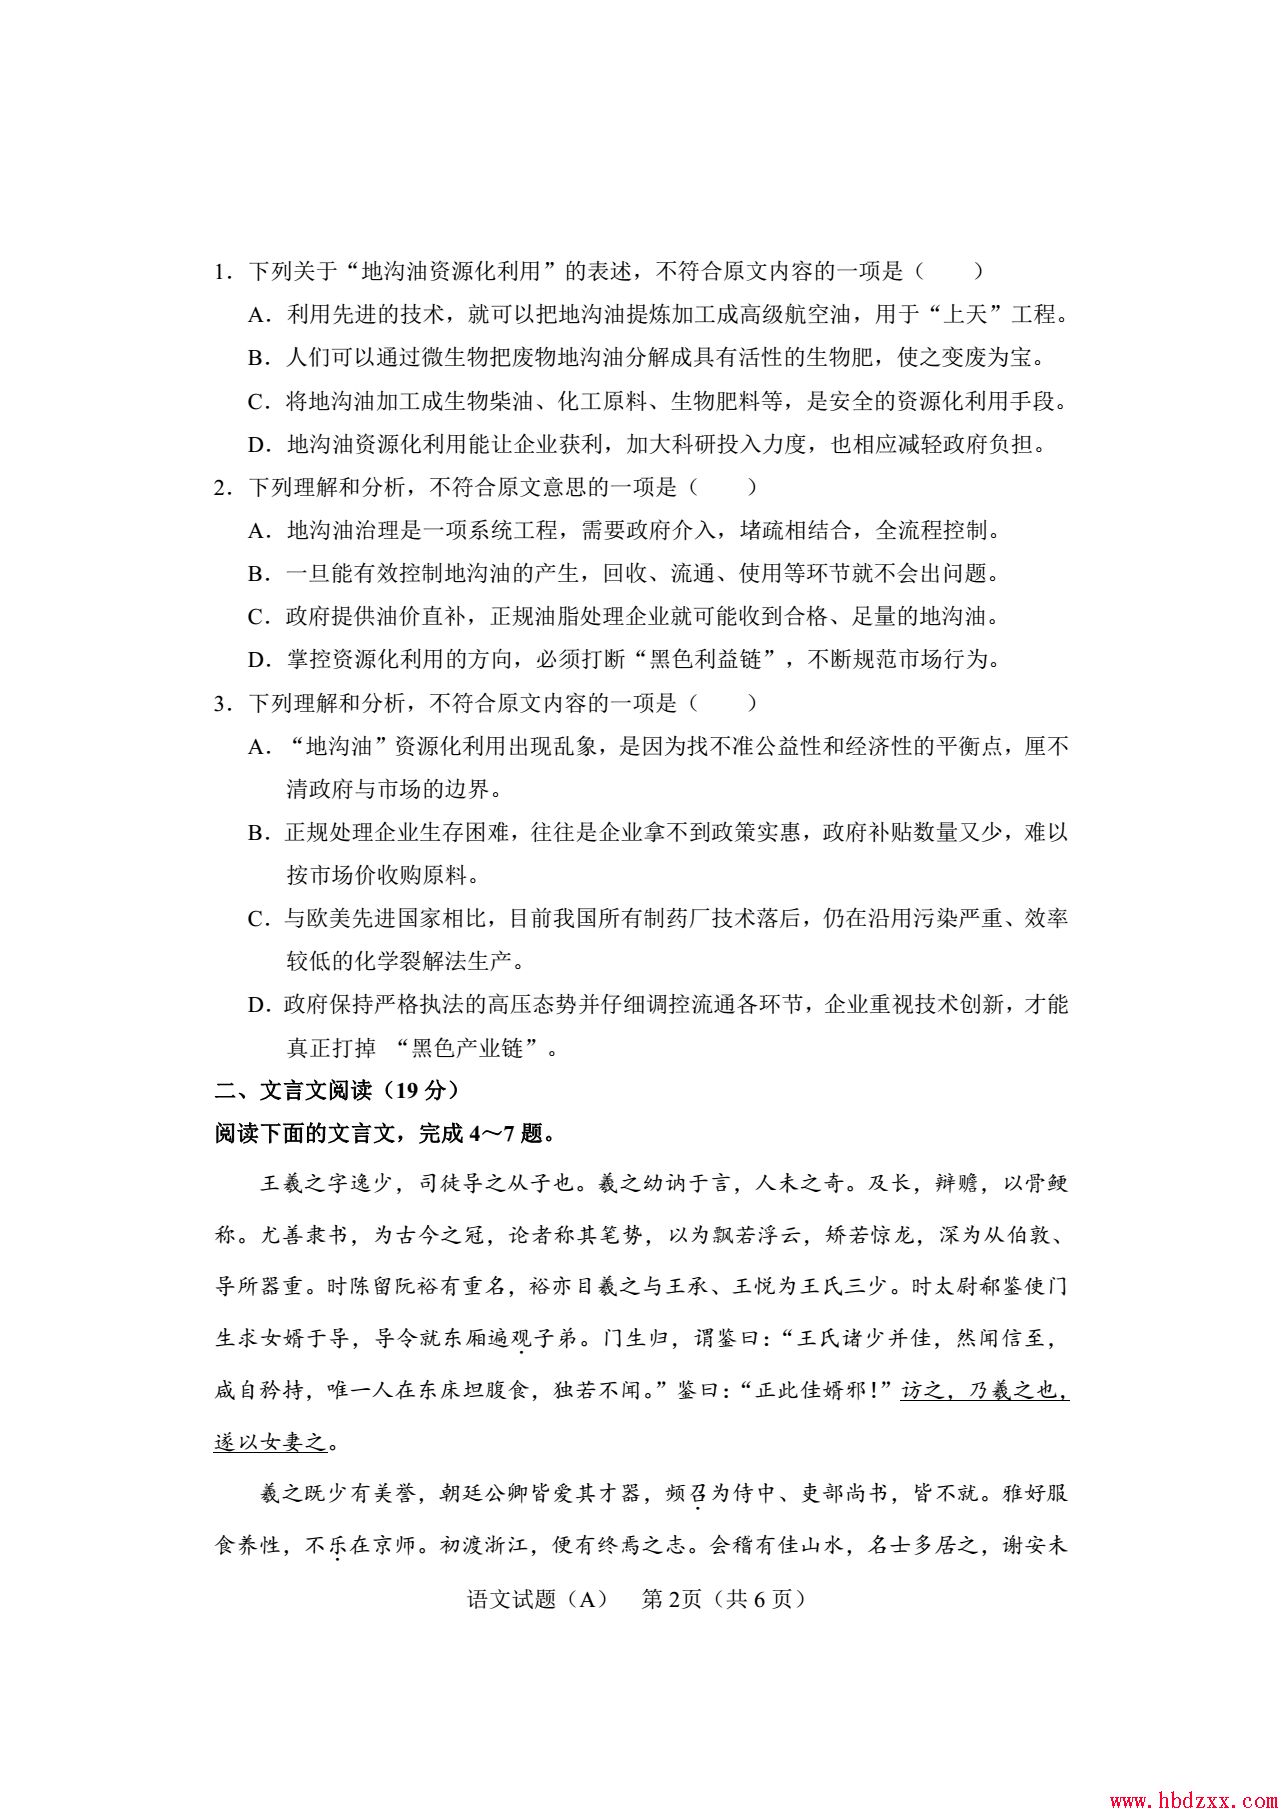 石家庄铁路职业技术学院2013年语文单招试题 图2